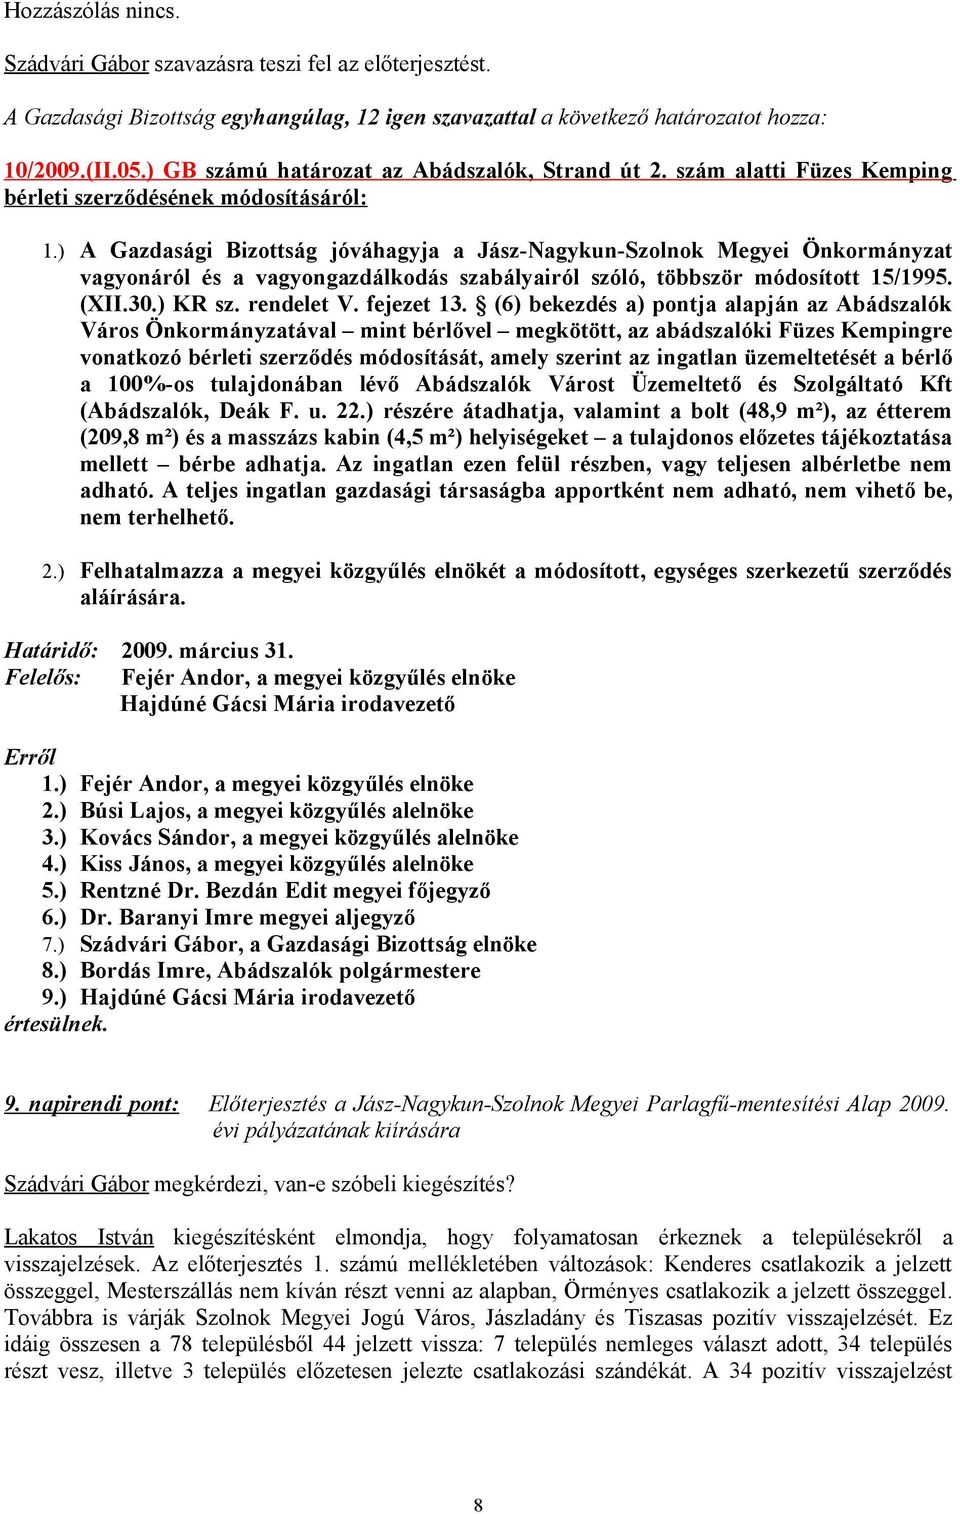 ) A Gazdasági Bizottság jóváhagyja a Jász-Nagykun-Szolnok Megyei Önkormányzat vagyonáról és a vagyongazdálkodás szabályairól szóló, többször módosított 15/1995. (XII.30.) KR sz. rendelet V.